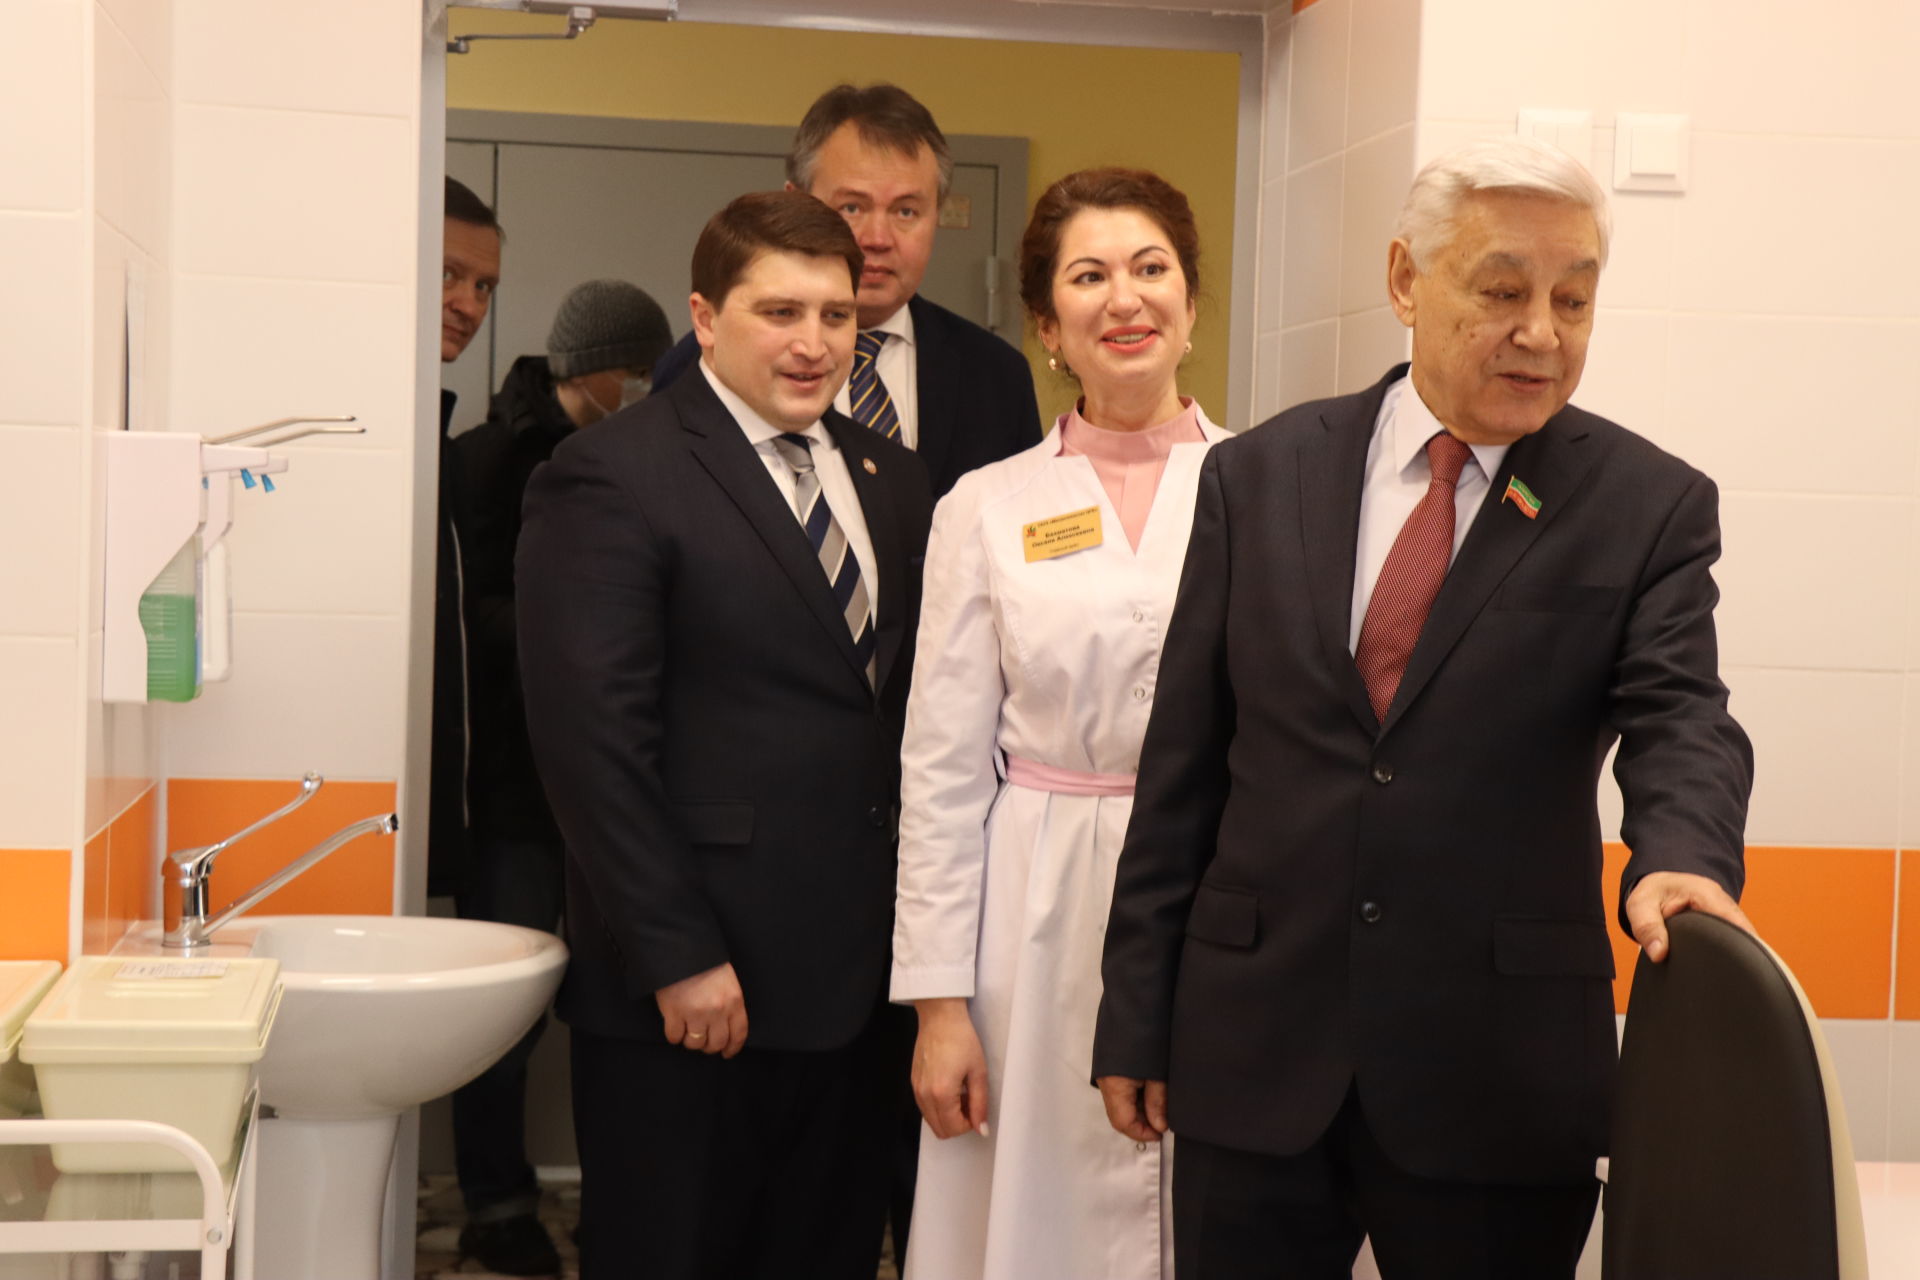 Фарид Мухаметшин поздравил с новосельем детскую поликлинику Менделеевска